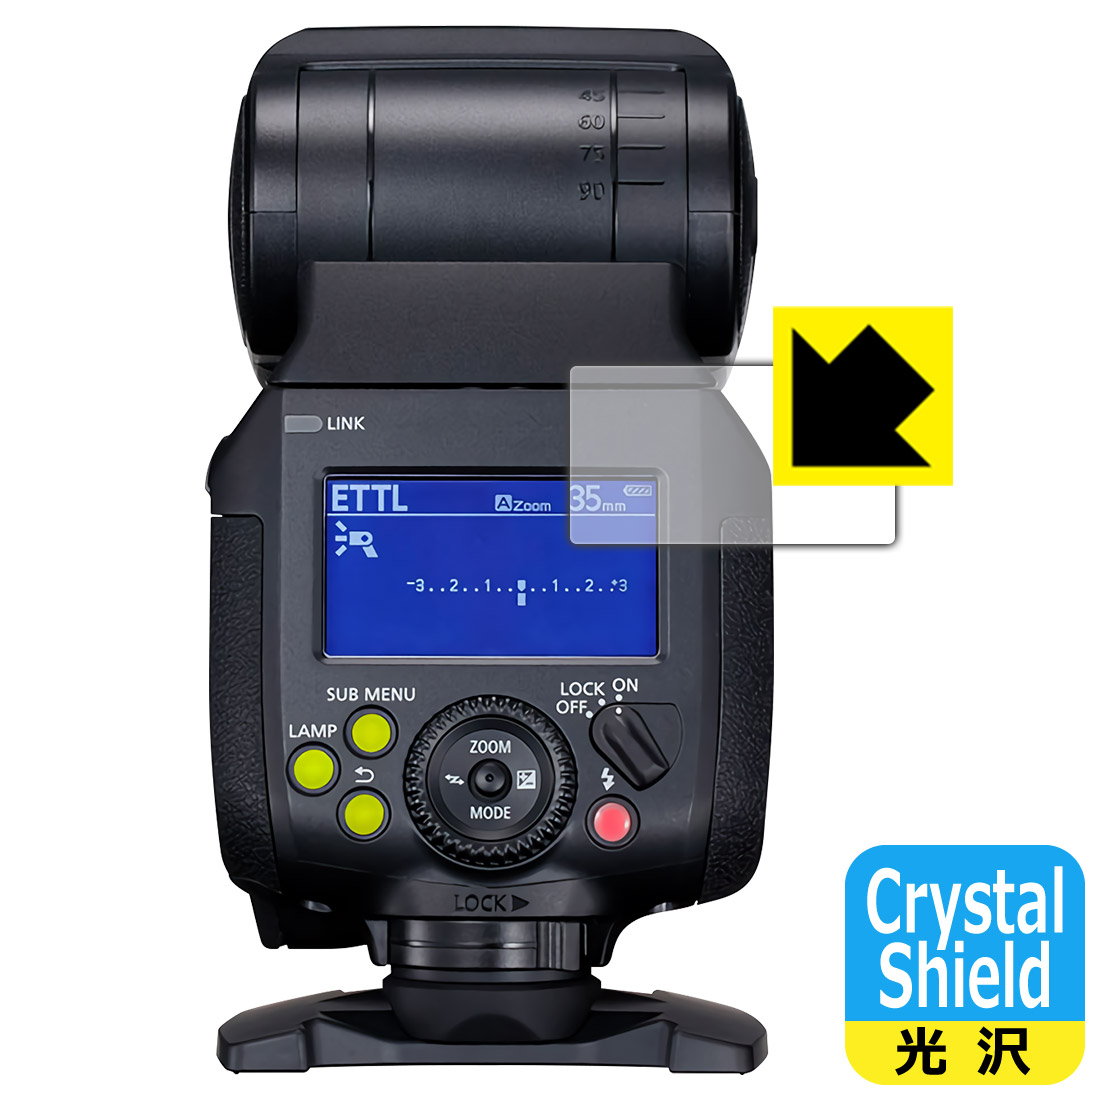 光沢タイプ Canon スピードライト EL-1 表示パネル用 専用保護フィルム Shield 保護シート smtb-kd Crystal 3枚セット お気に入り マーケット